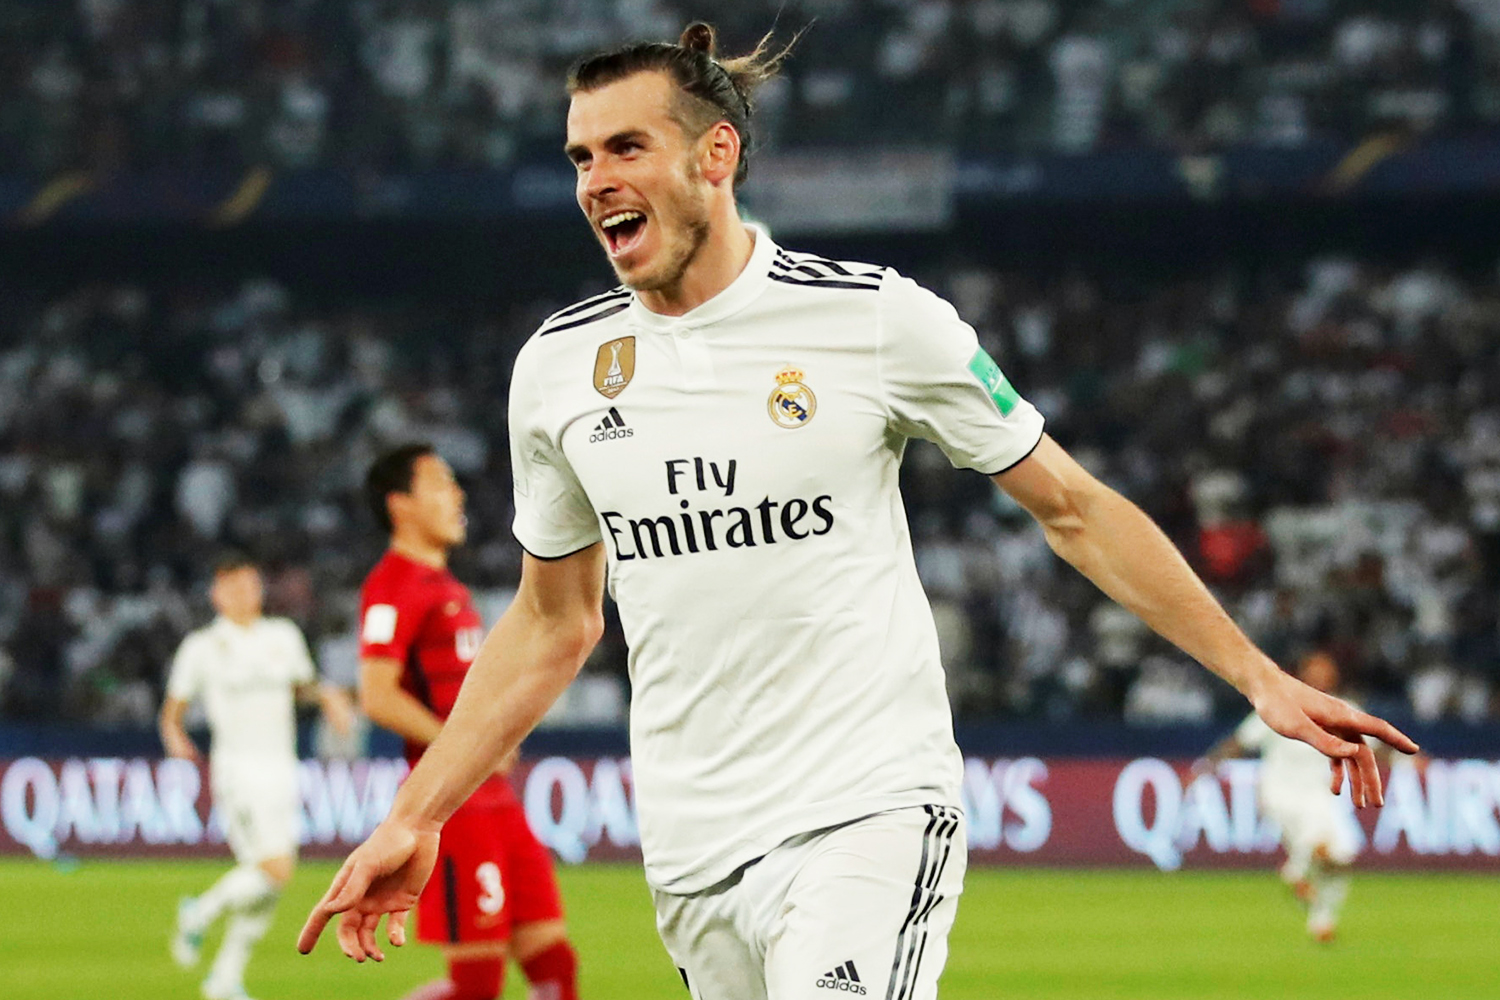 Jornal revela maiores salários das ligas europeias; Bale lidera na Espanha